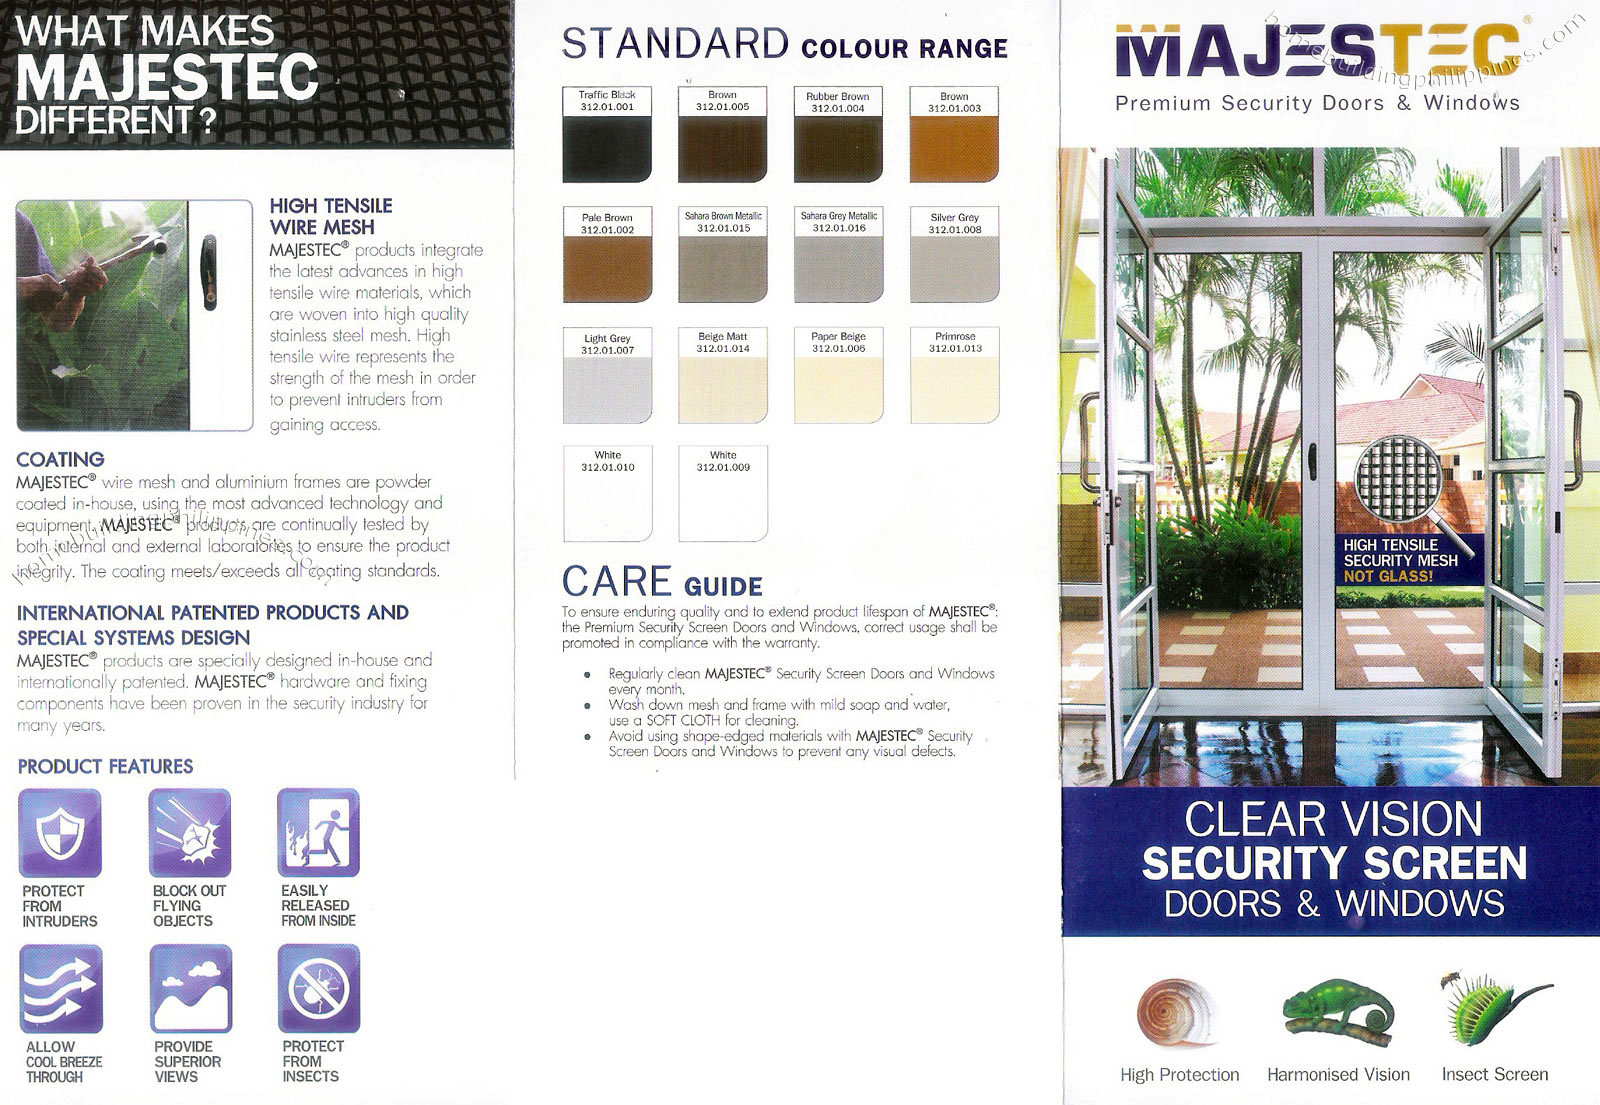 Majestec Premium Security Doors & Windows